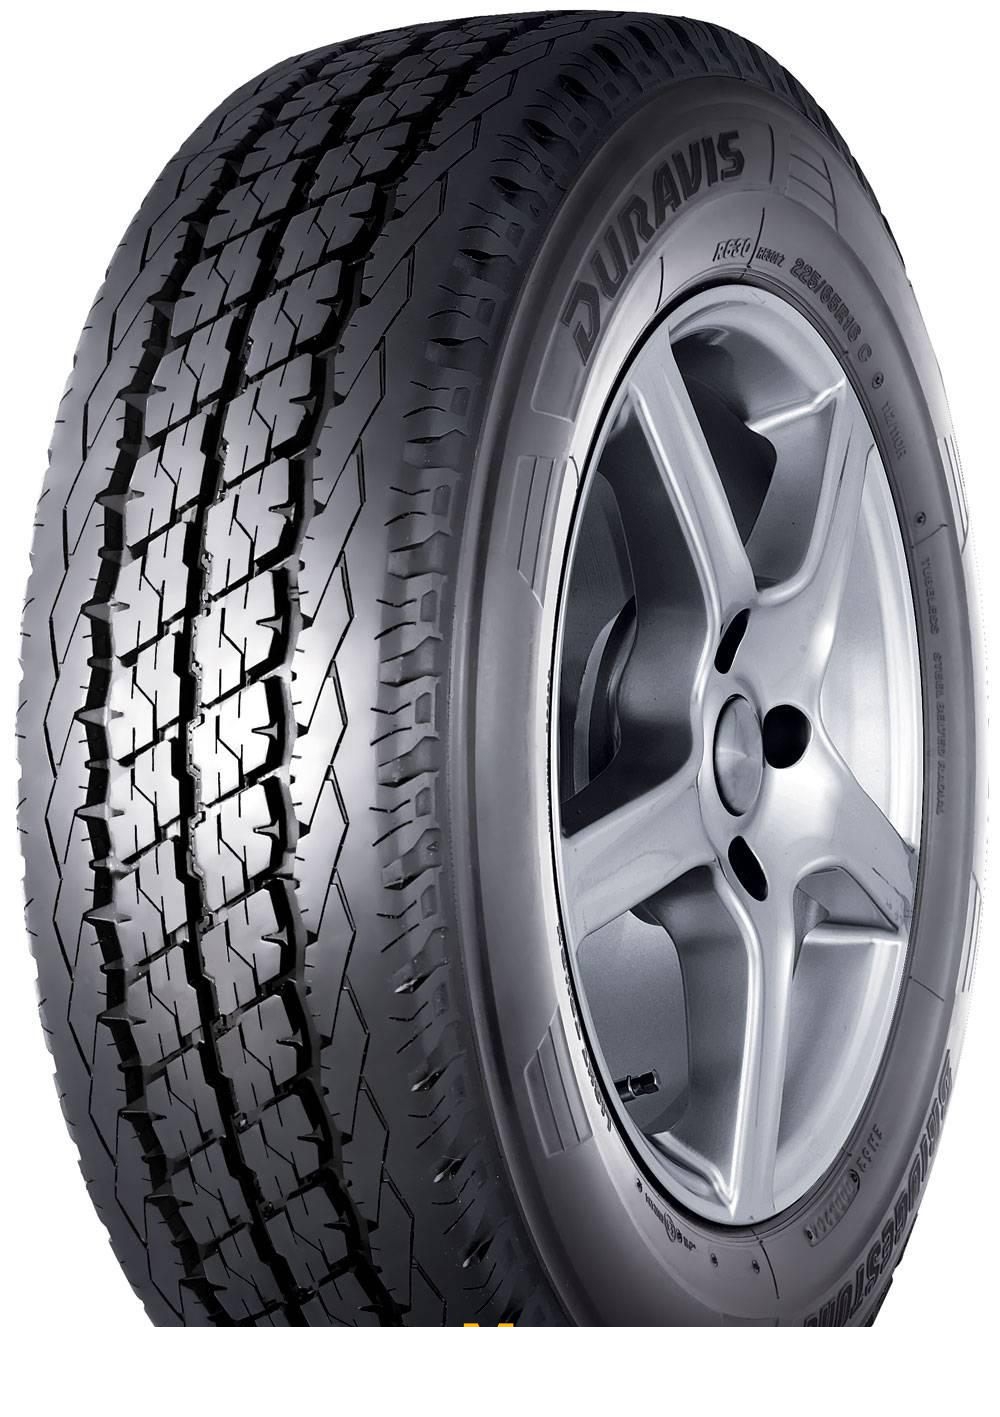 Tire Bridgestone Duravis R630 195/70R15 104R - picture, photo, image